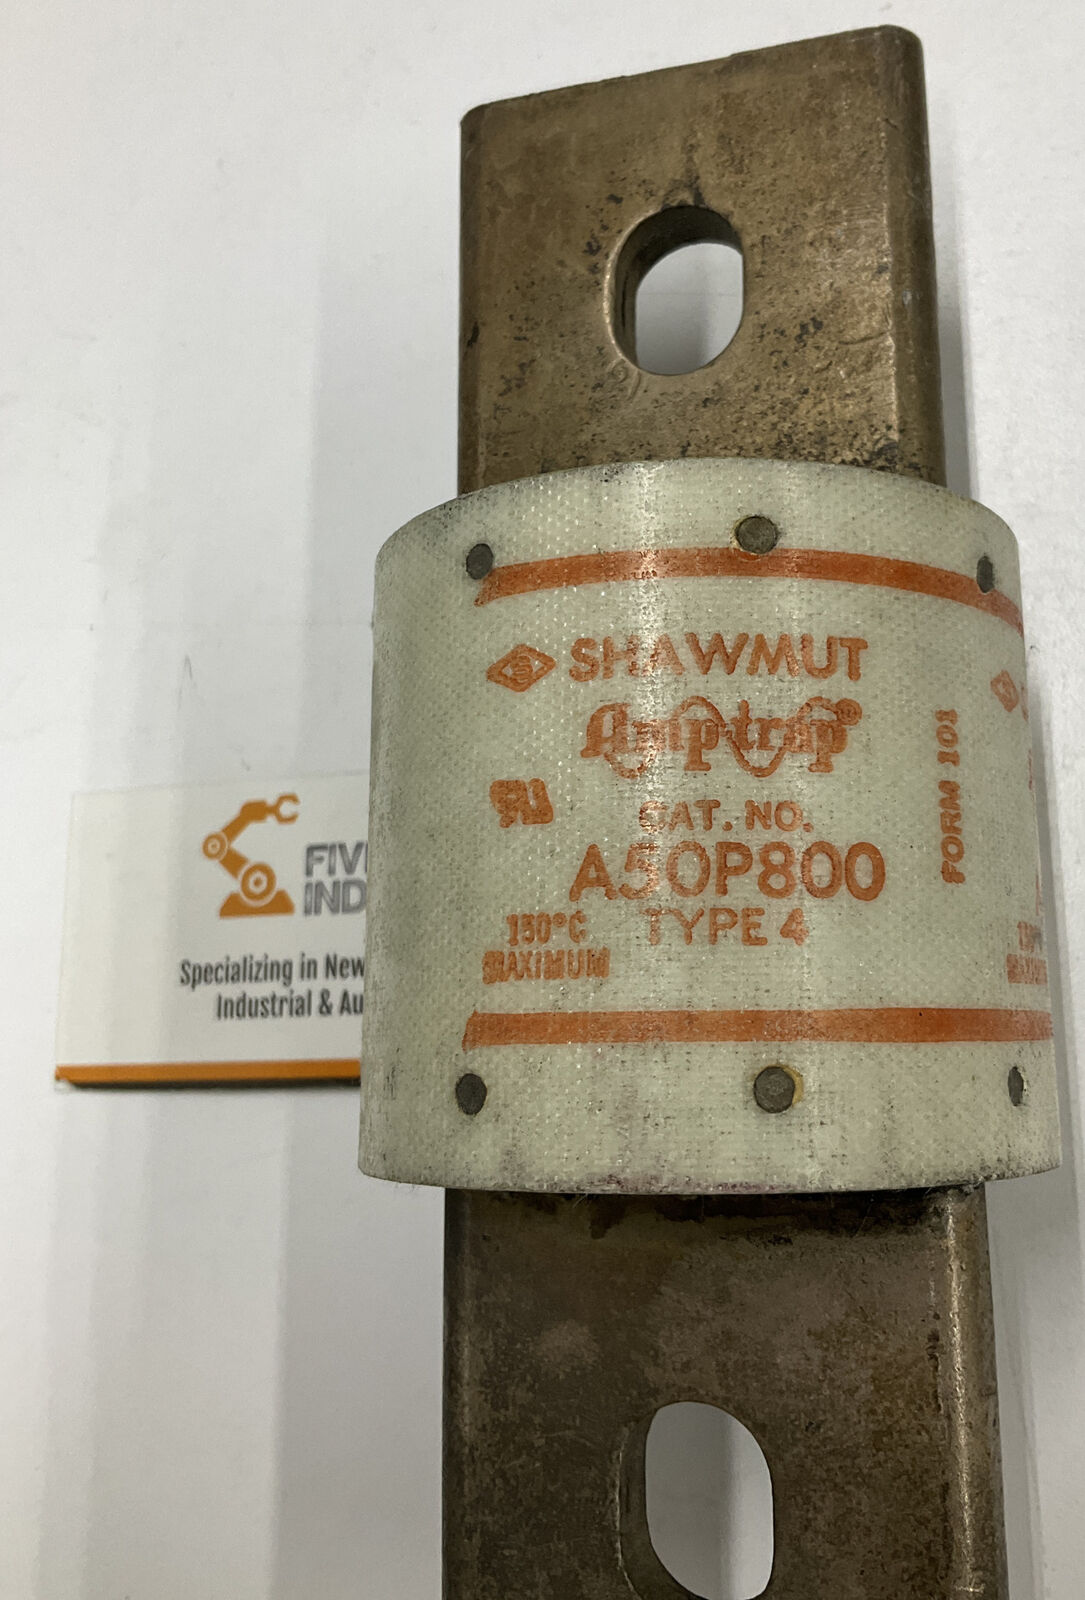 Shawmut Amptrap A50P800 800 Amp Type 4 Fuse (GR212) - 0